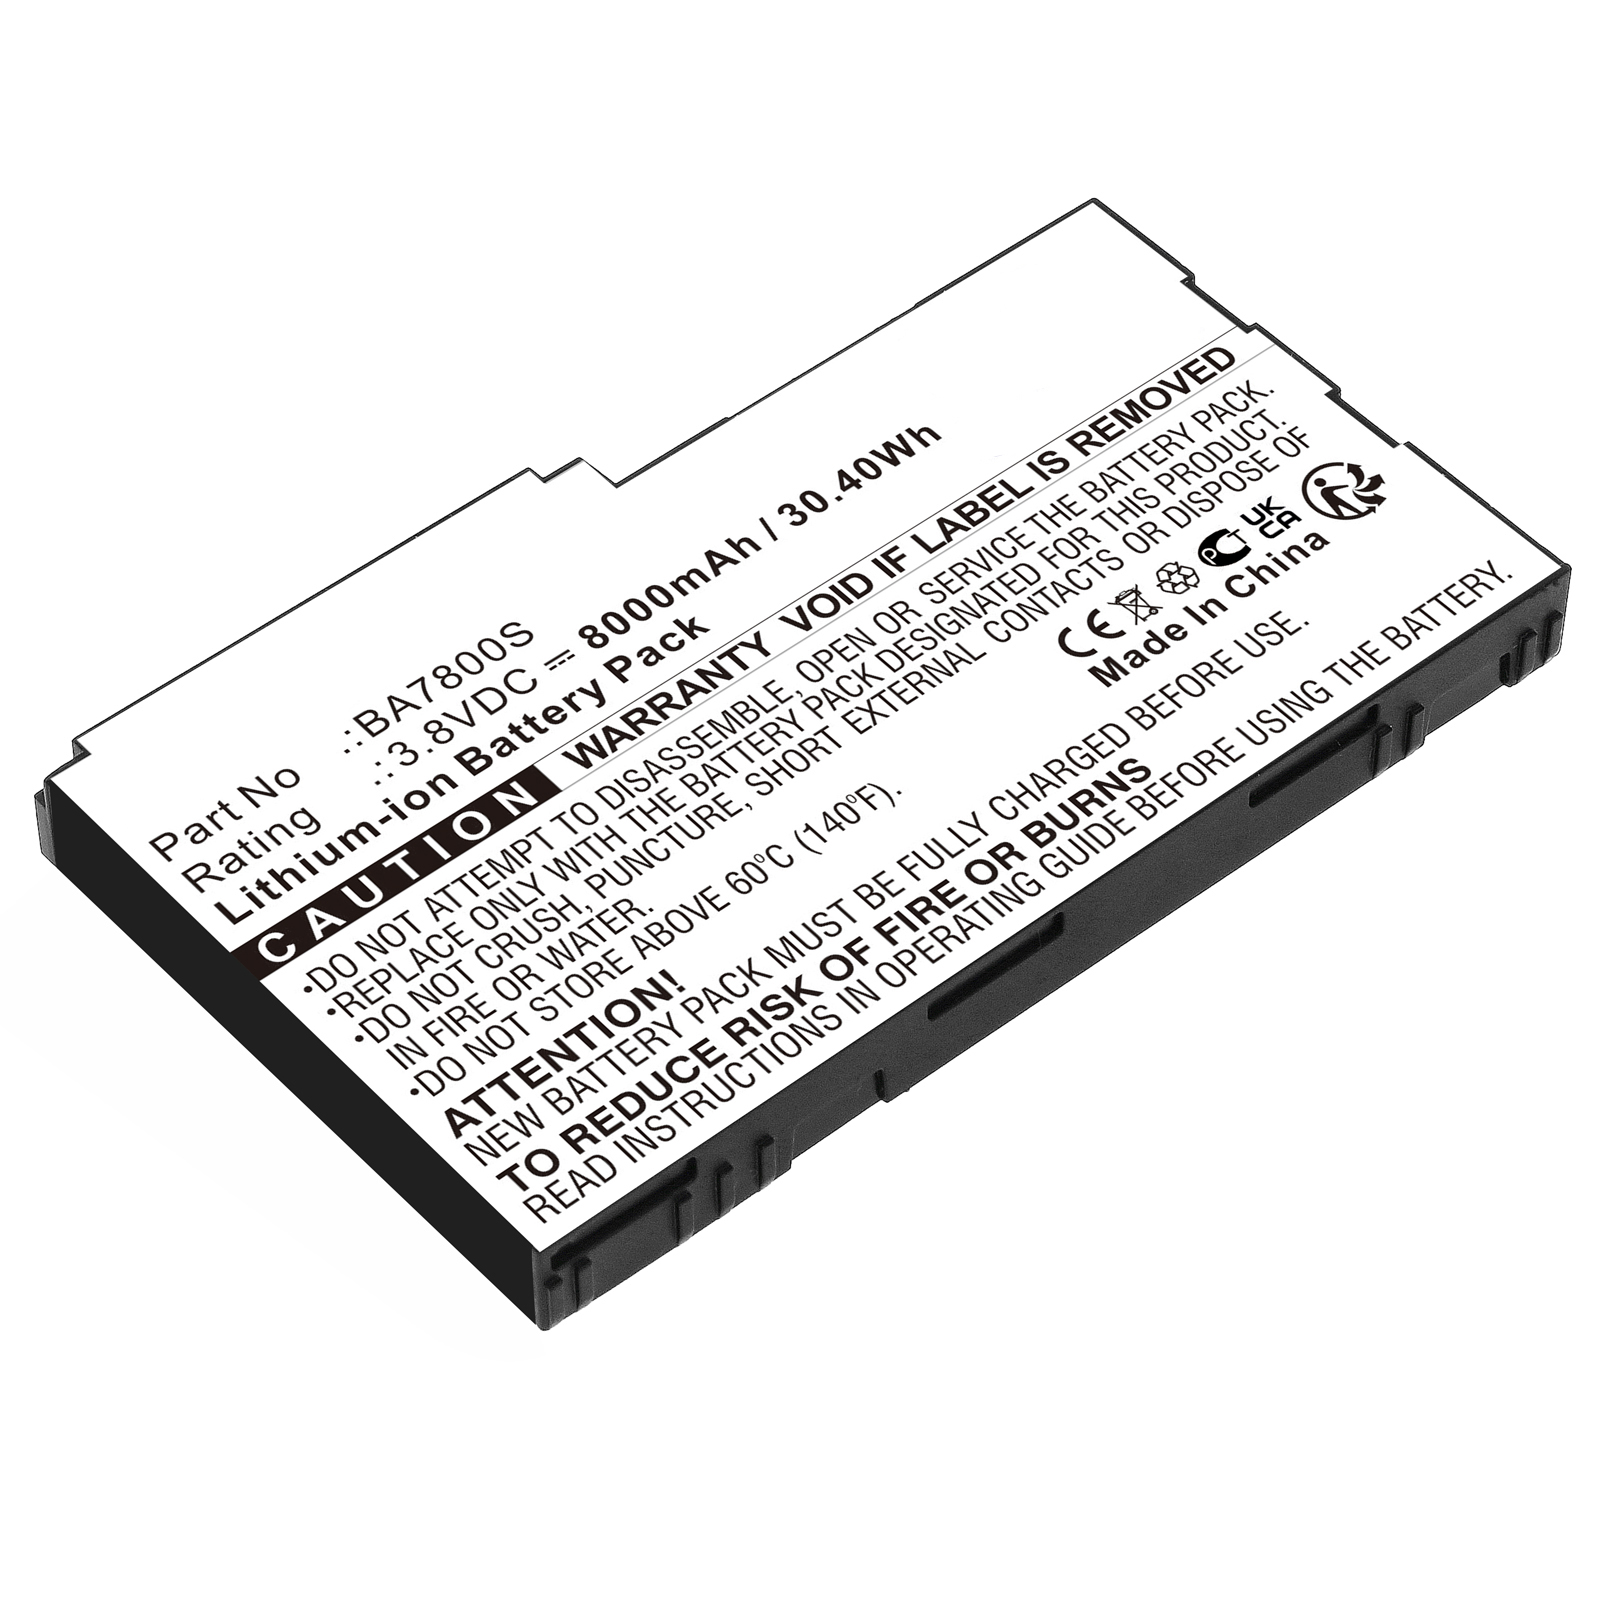 Batteries for SonimEquipment